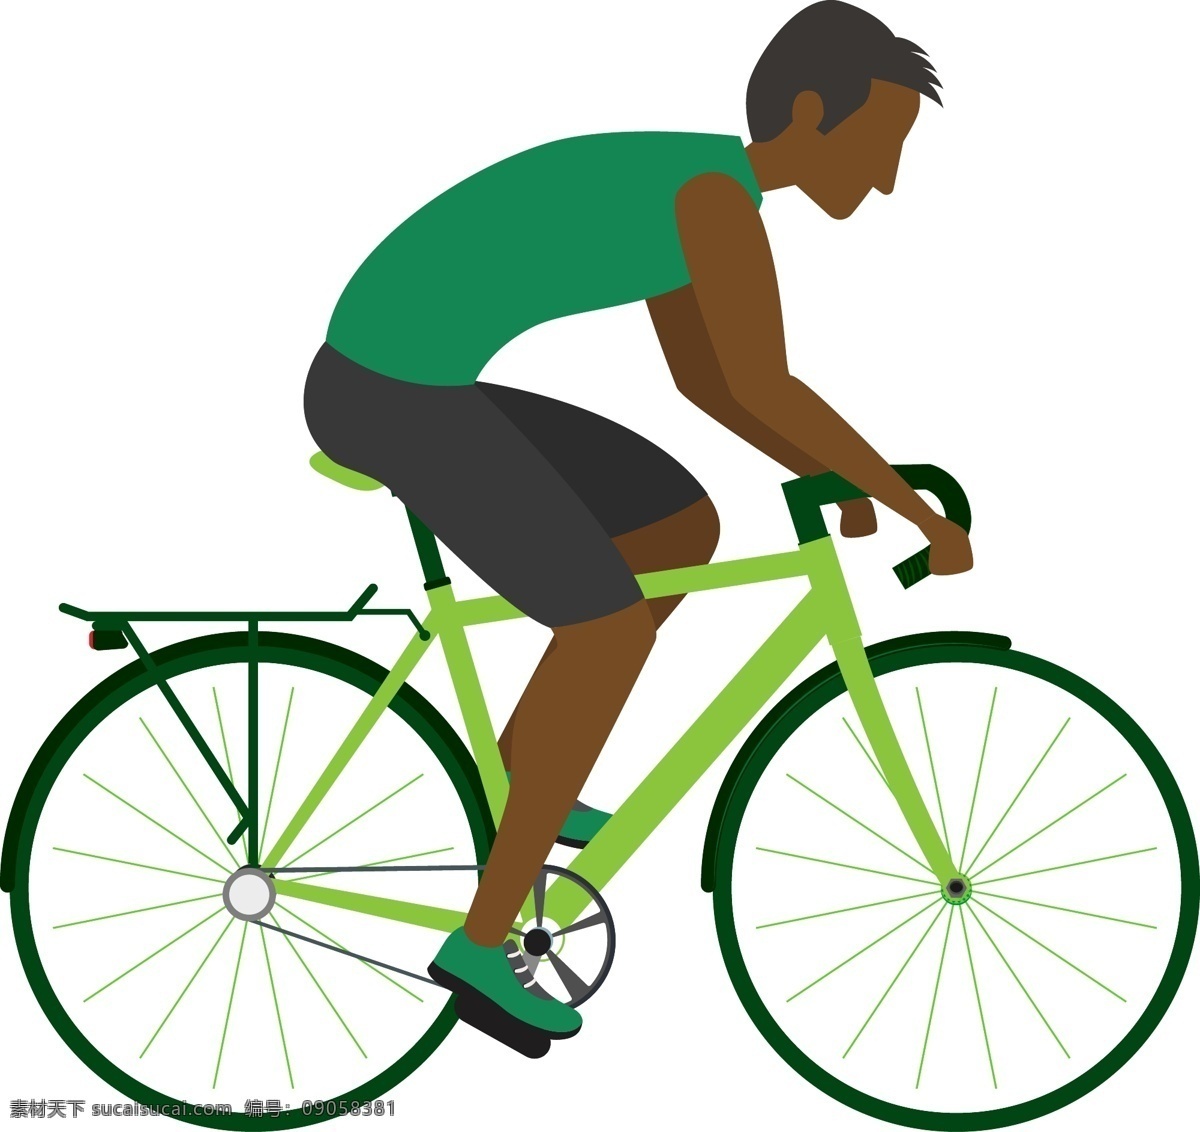 手绘 骑 单车 皮肤 黝黑 男性 青年 运动员 骑单车 比赛 健康 运动 皮肤黝黑 男性青年